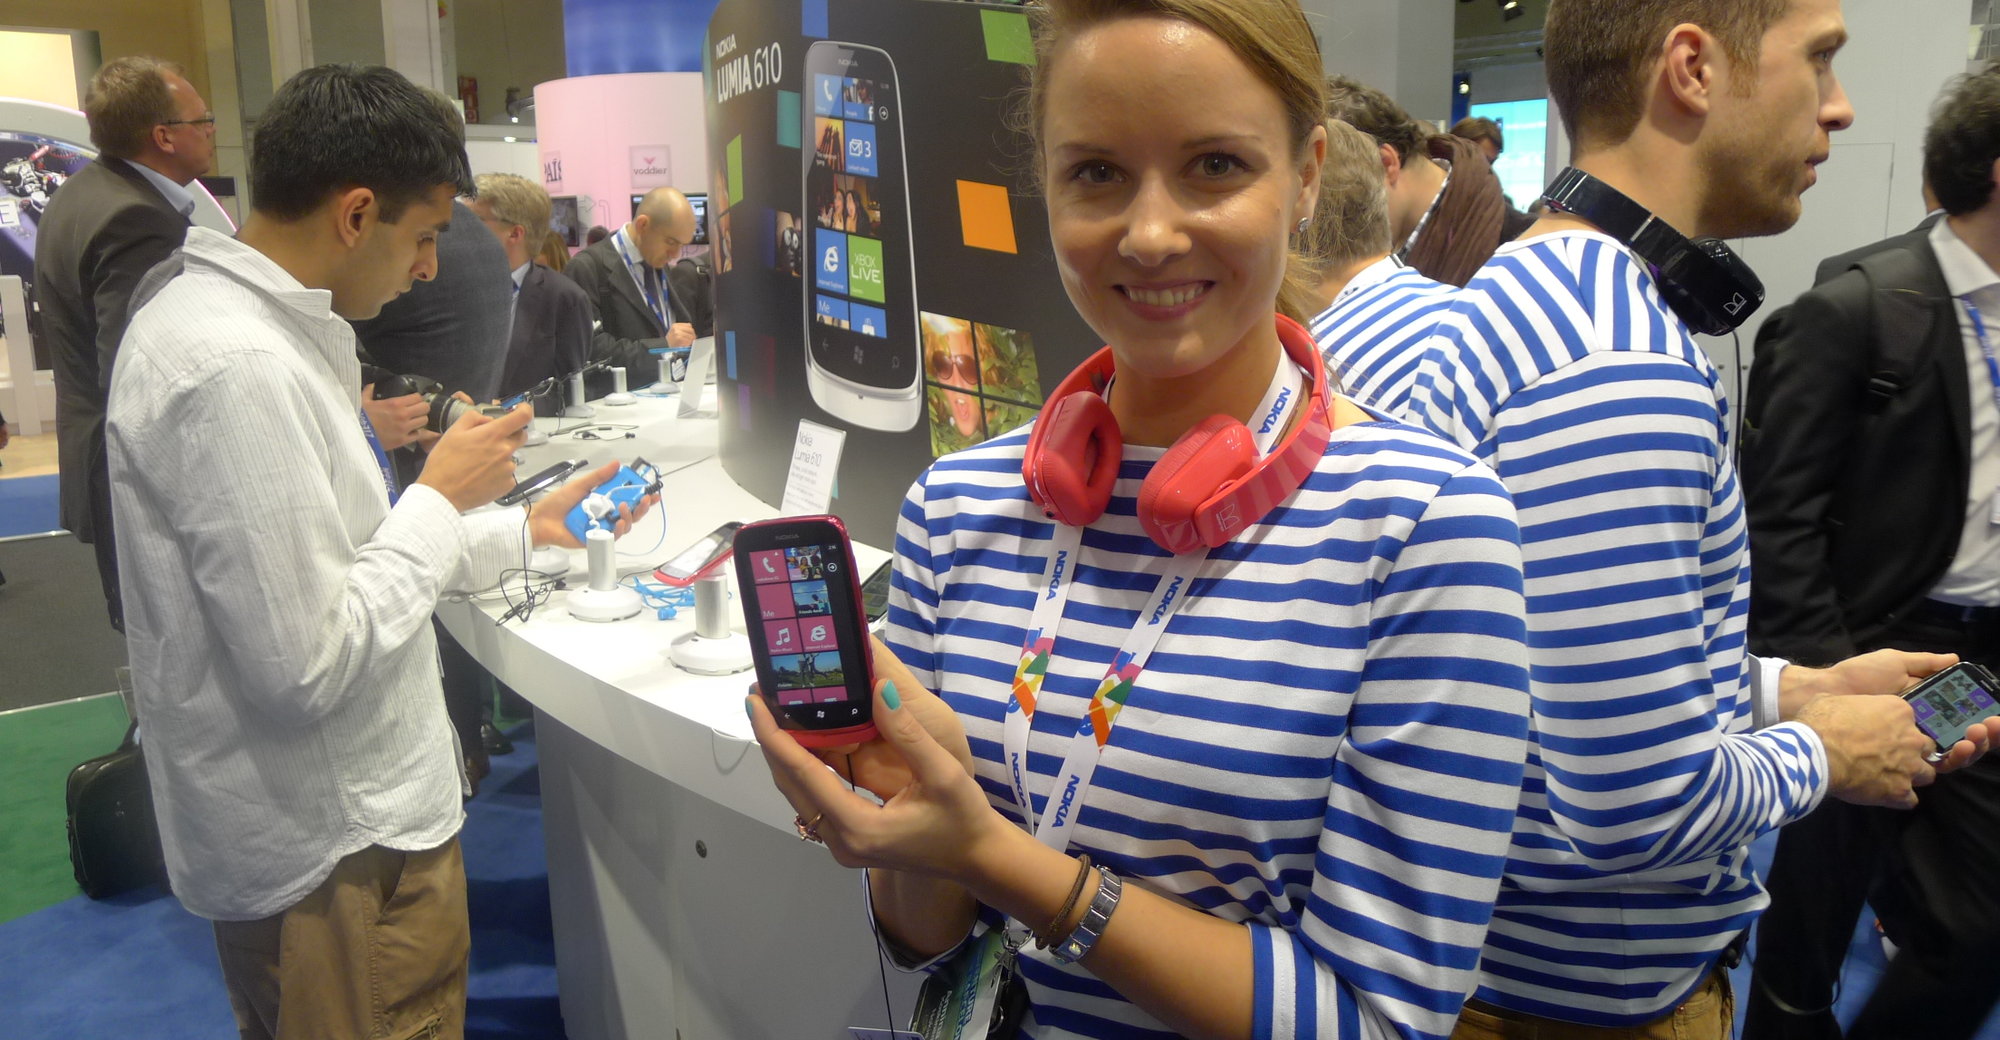 Nokias representant med en Lumia 610 - en Windows Phone 7.5 Tango-mobil til 1400 kroner uten kontrakt. Lansering i andre halvdel i år.